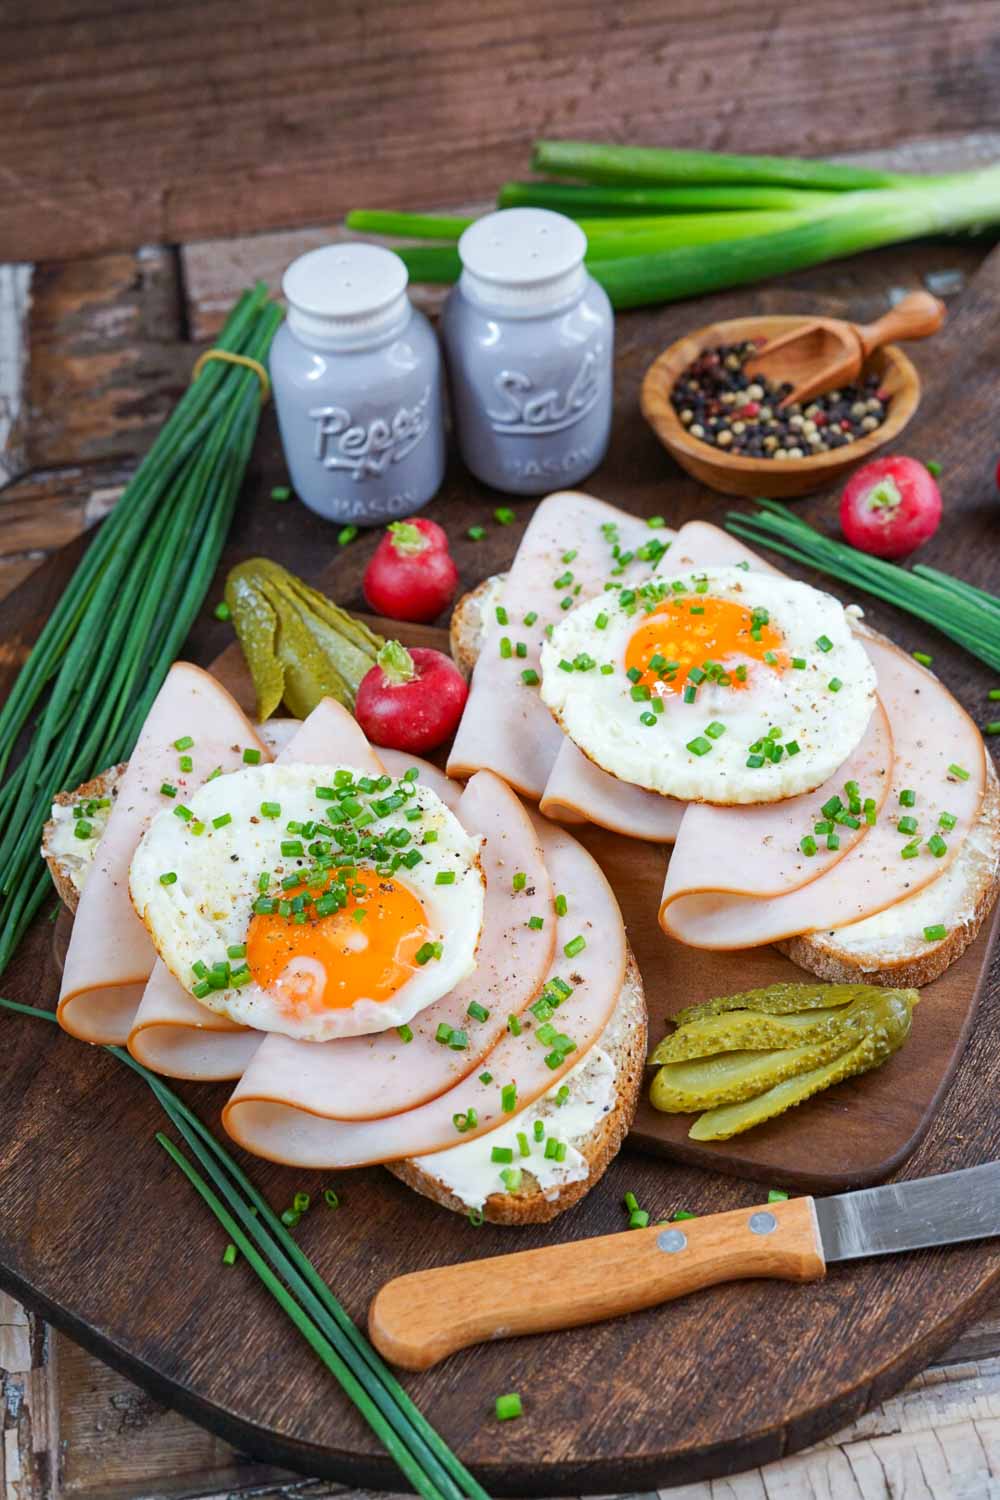 Strammer Max kalorienarm serviert auf Holzbrett mit Schnittlauch und wachsweichem Ei